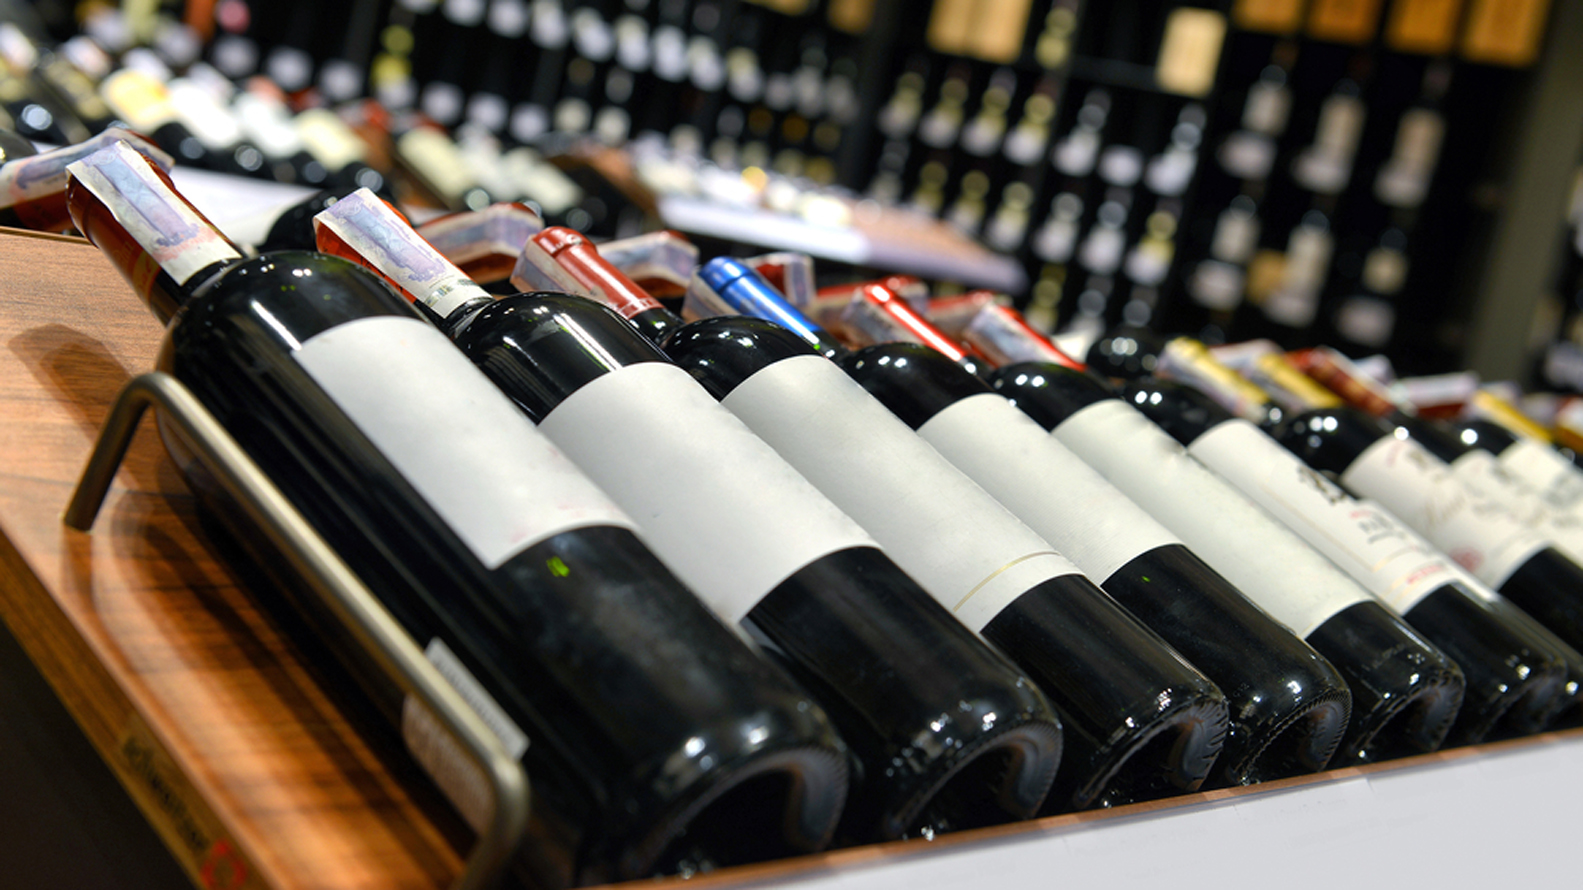 Los precios de los productos sustitutos le pondrán un límite a los incrementos de los vinos. REUTERS.Shutterstock